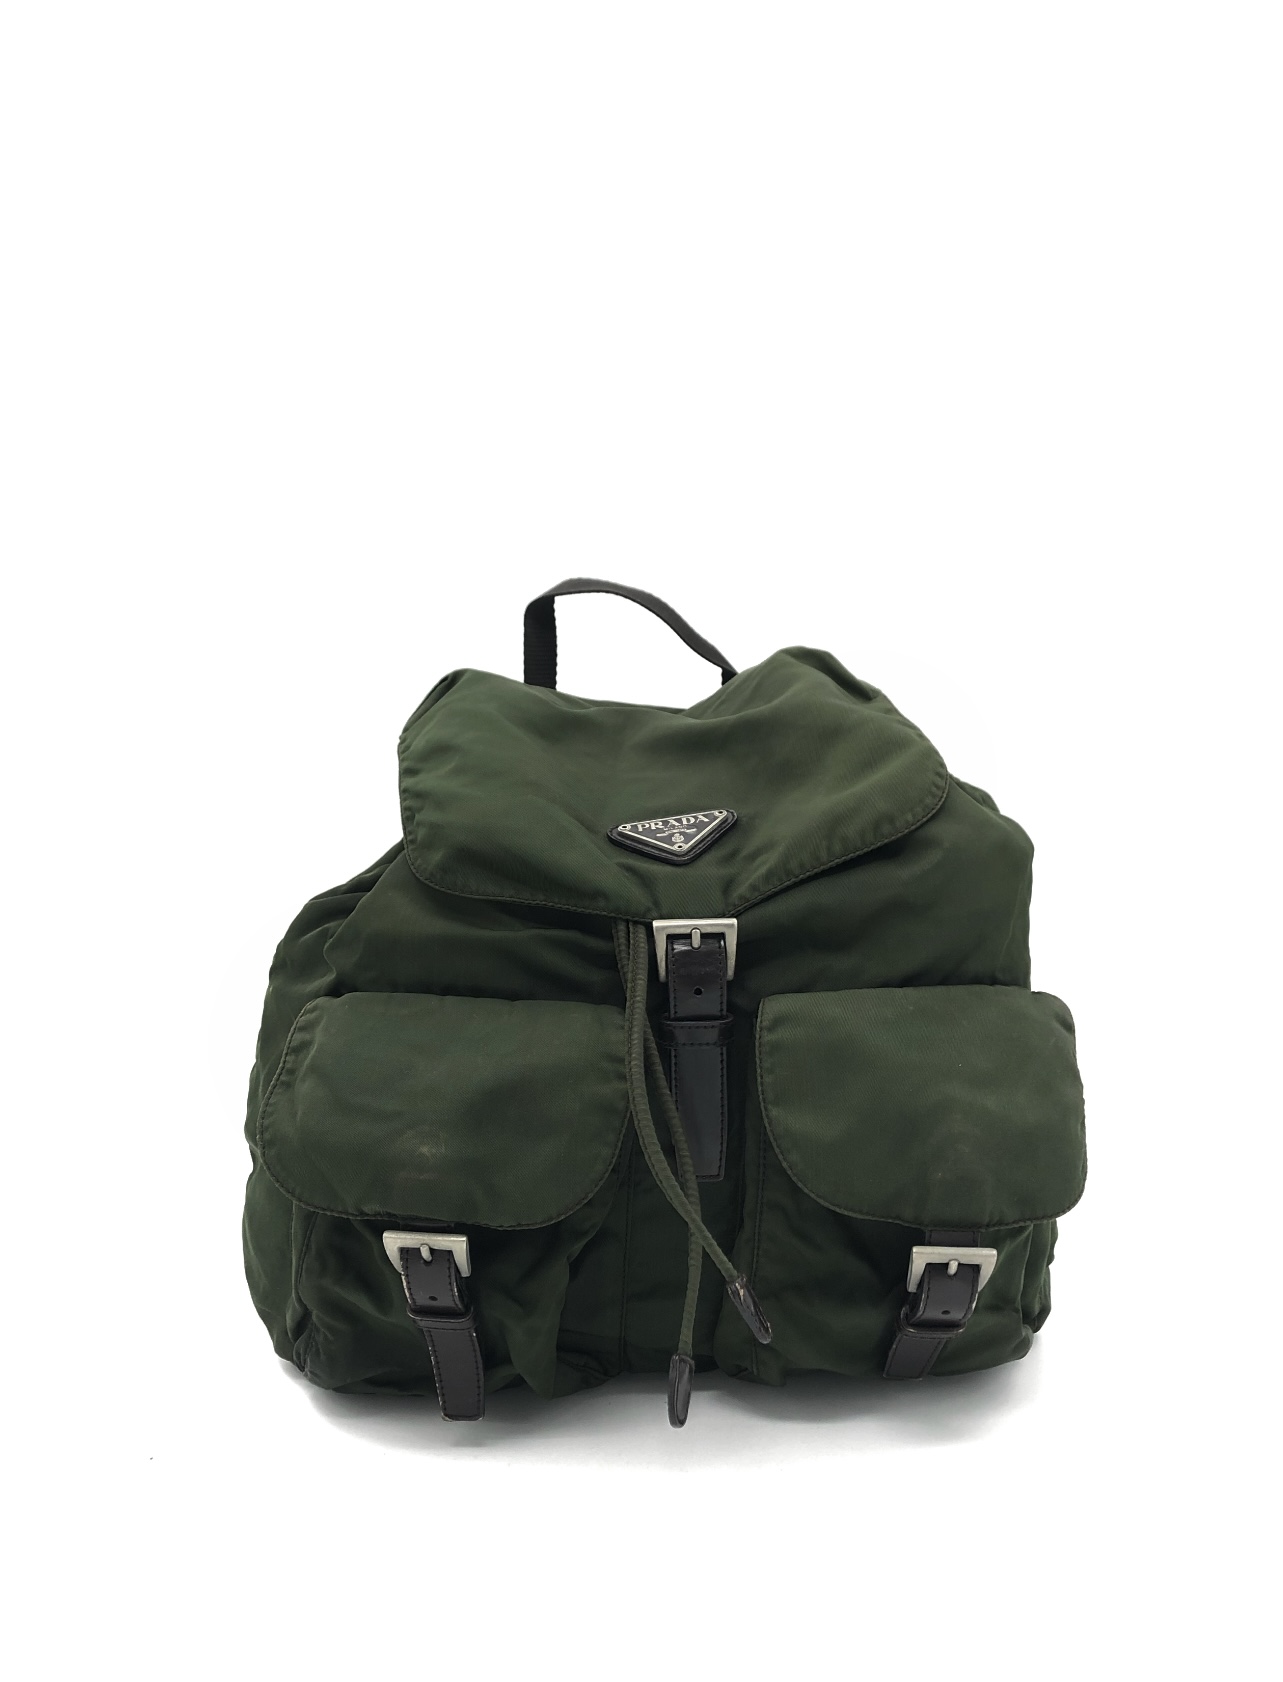 Prada Army Green Backpack